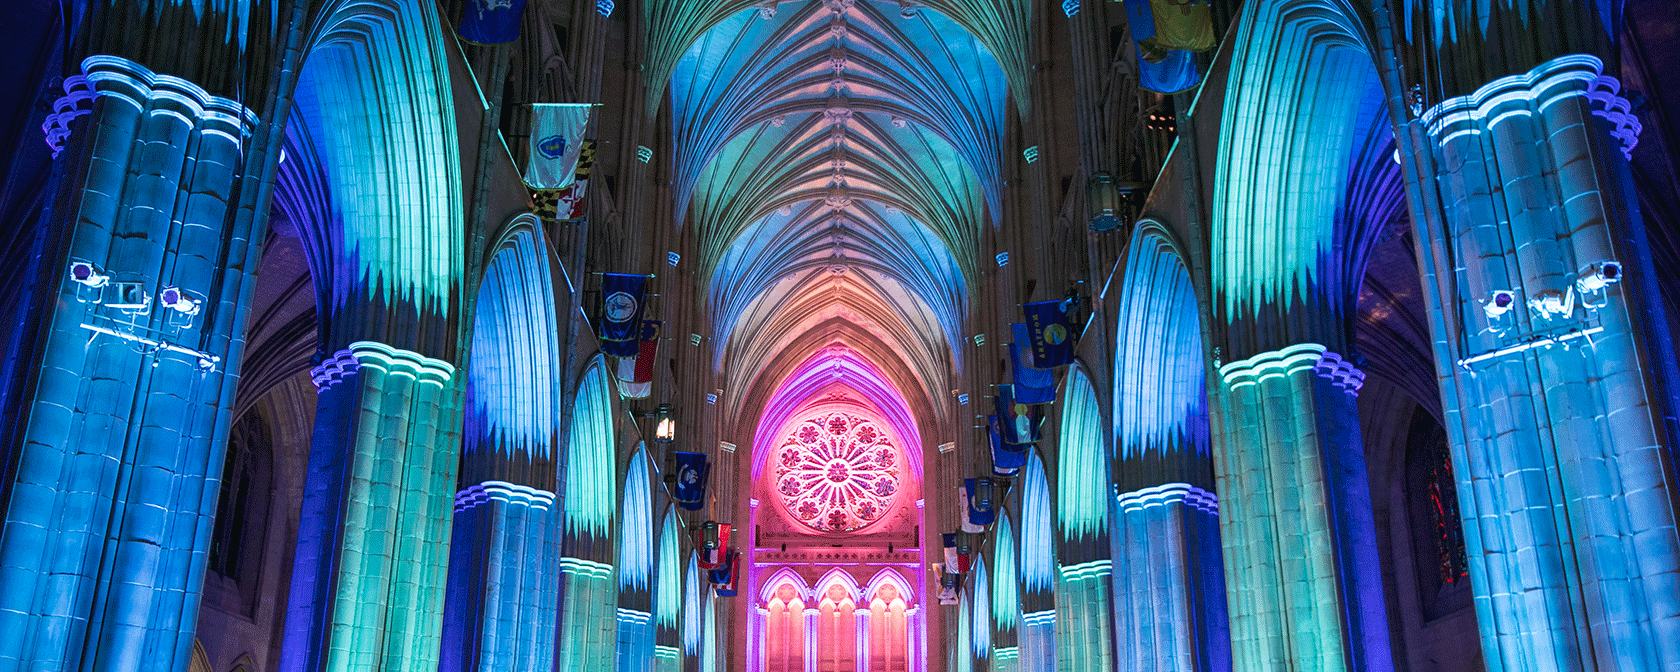 La cathédrale s'illumine à l'intérieur avec des lumières bleues et roses (Crédit : Jason Dixson)